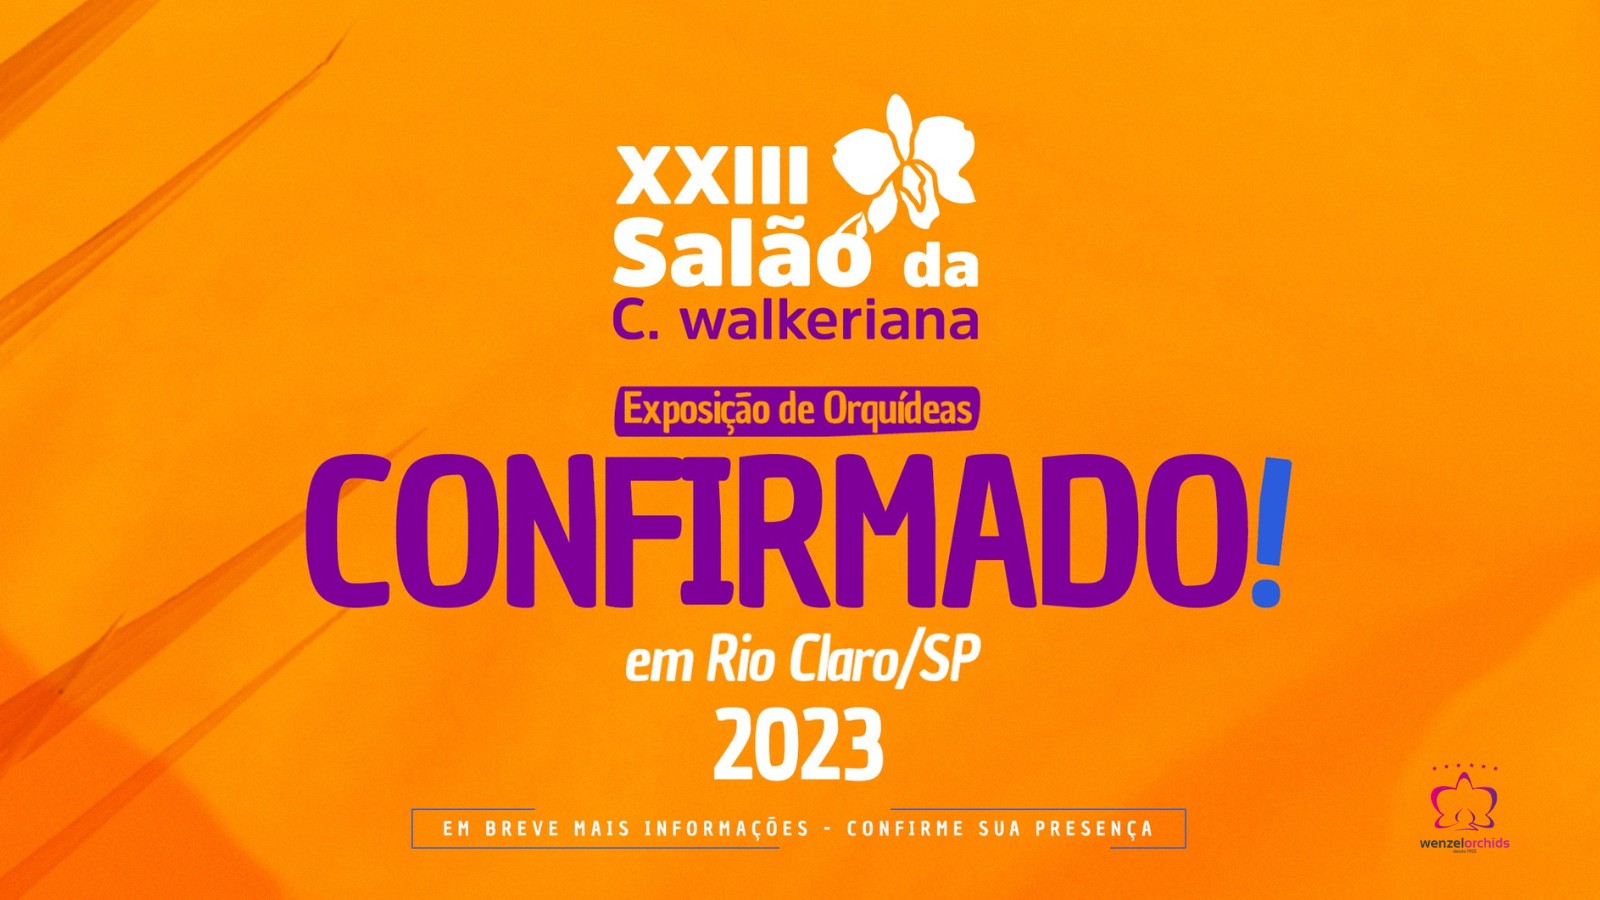 Celebre as orquídeas no XXIII Salão C. walkeriana neste final de semana em Rio Claro